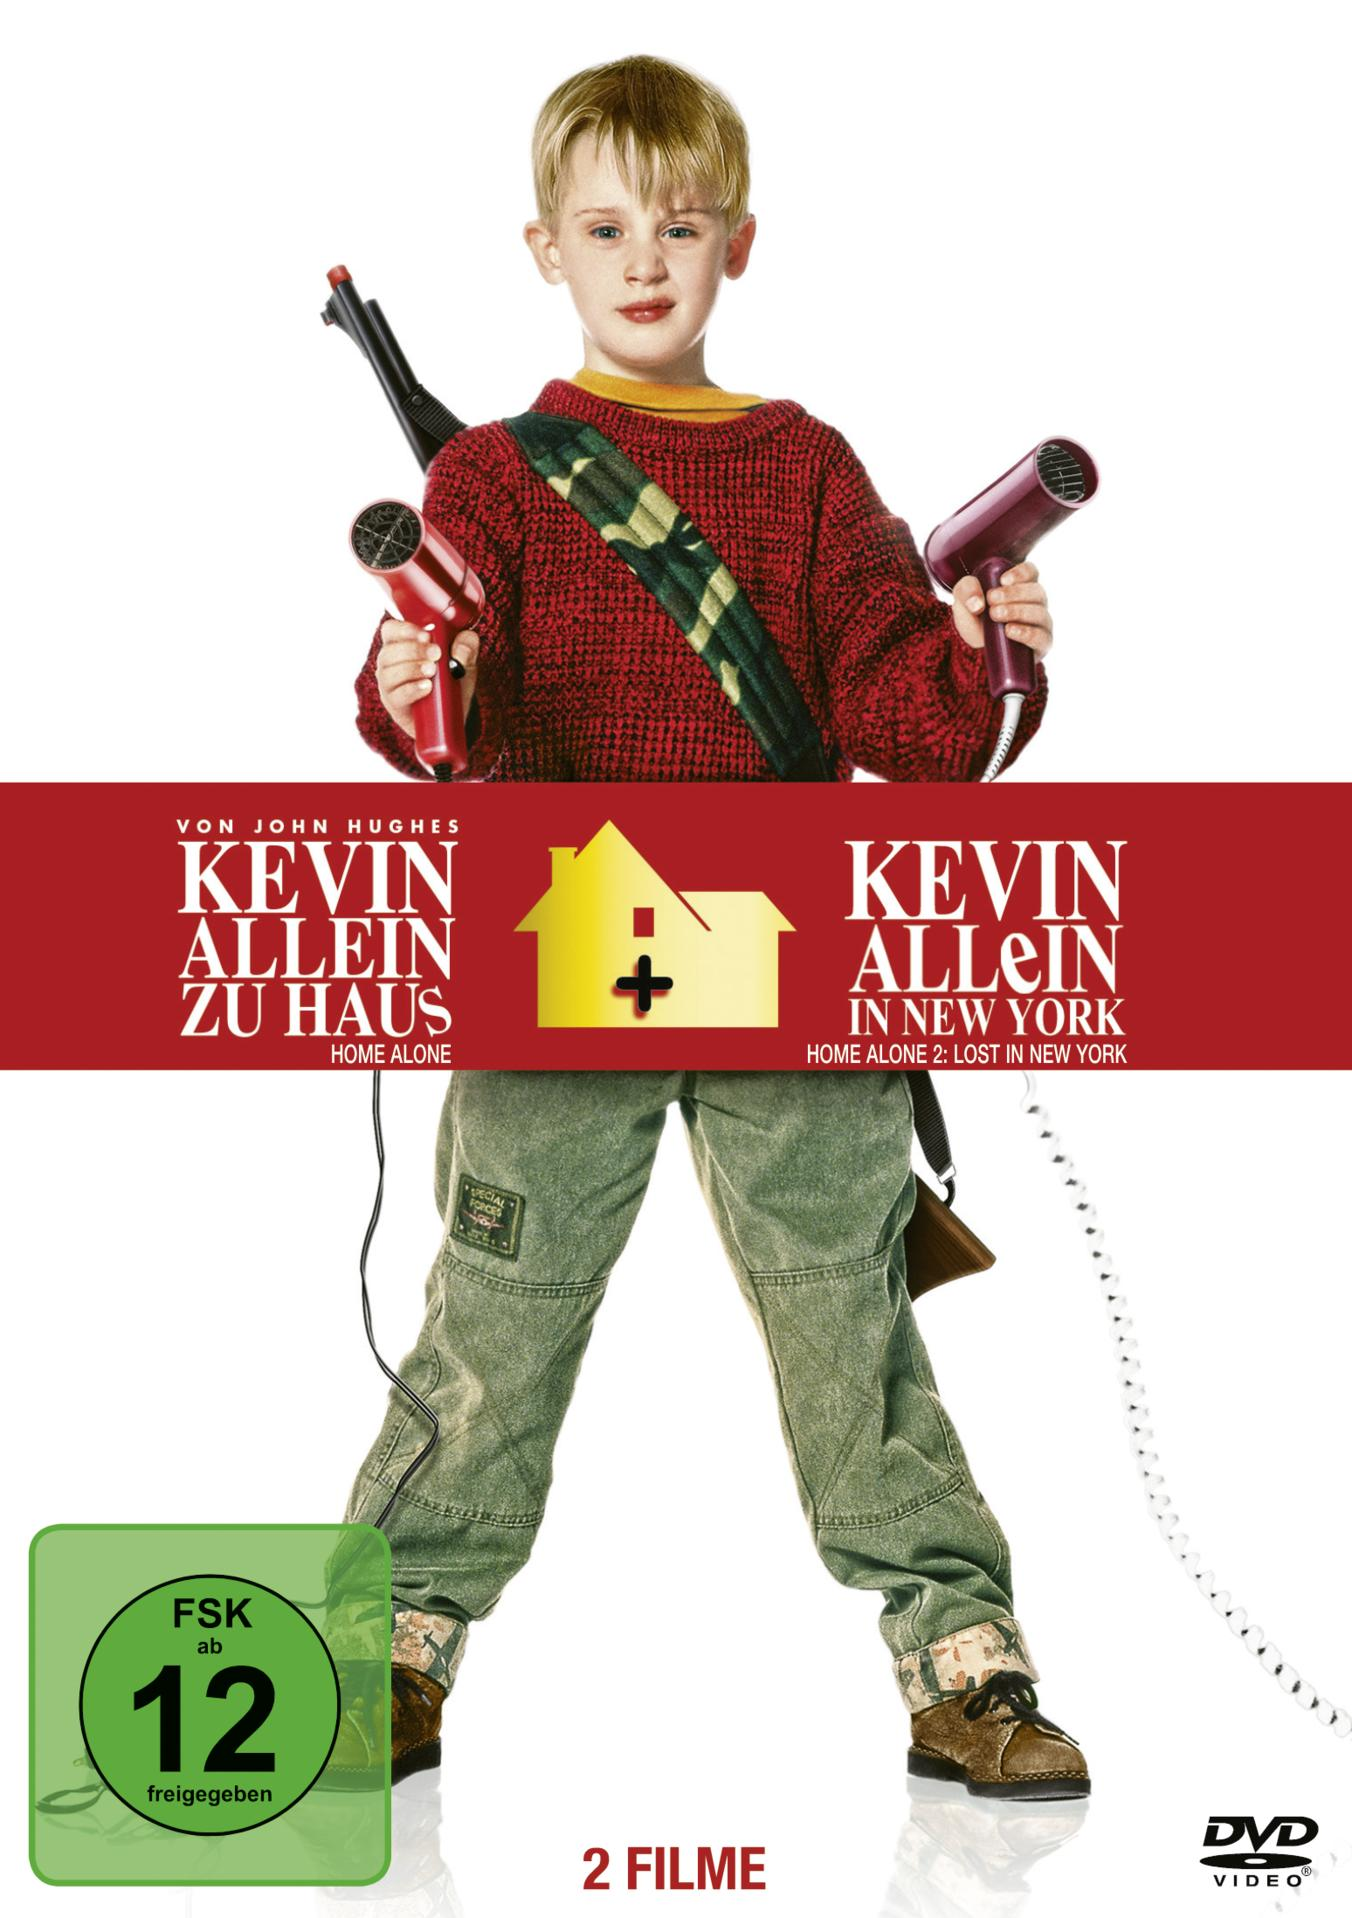 Kevin - - Allein Allein York zu DVD in / Haus New Kevin